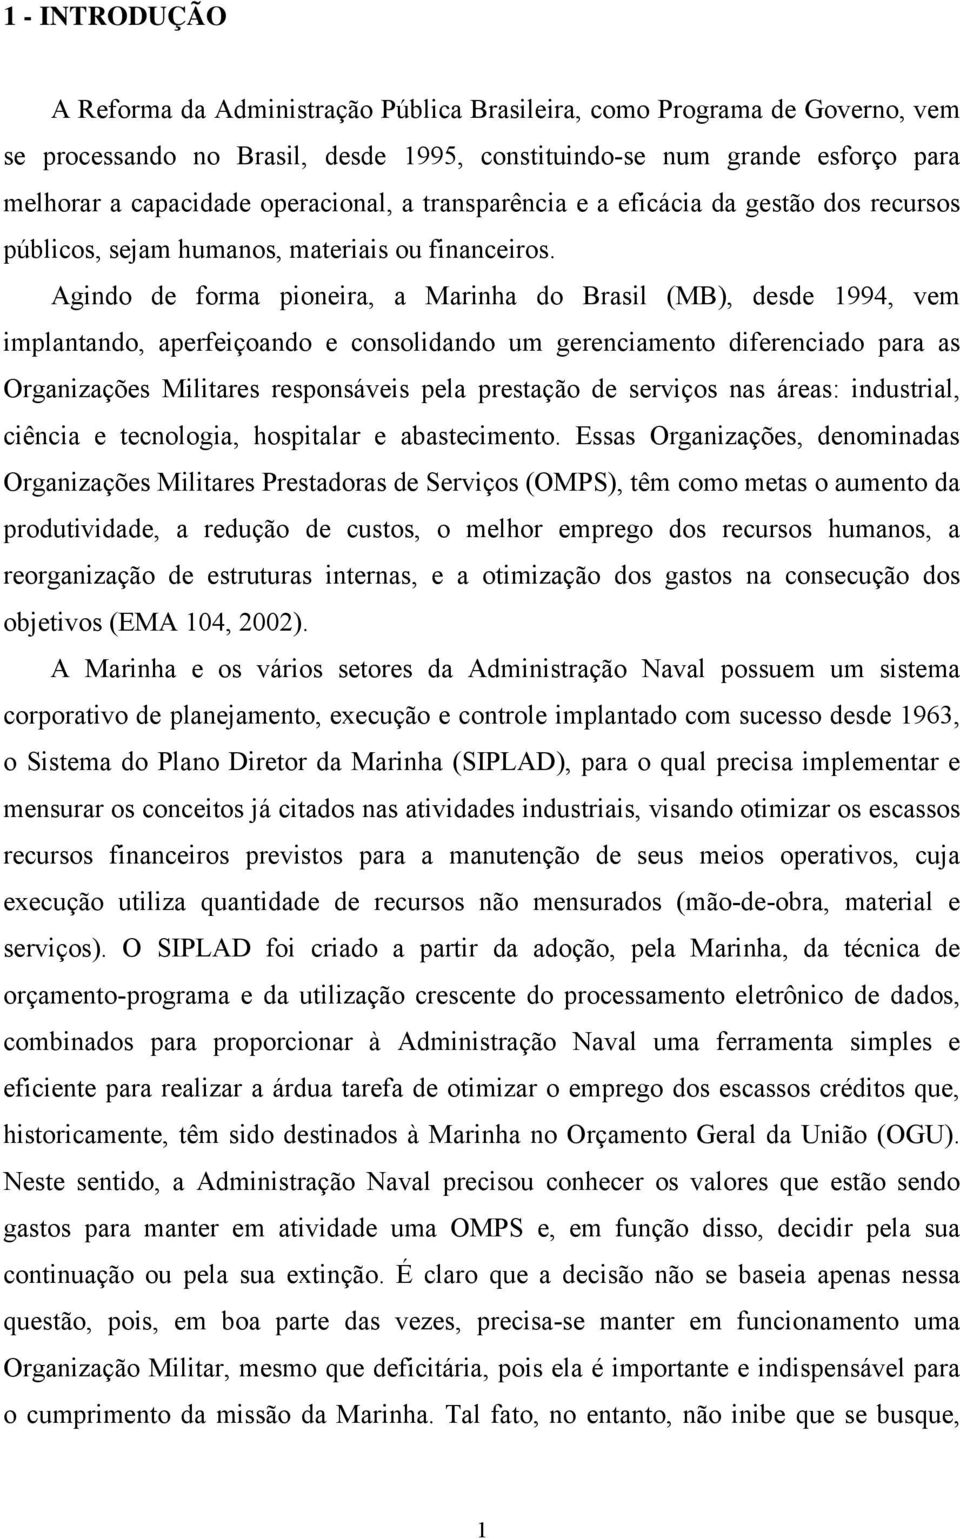 Agindo de forma pioneira, a Marinha do Brasil (MB), desde 994, vem implanando, aperfeiçoando e consolidando um gerenciameno diferenciado para as Organizações Miliares responsáveis pela presação de